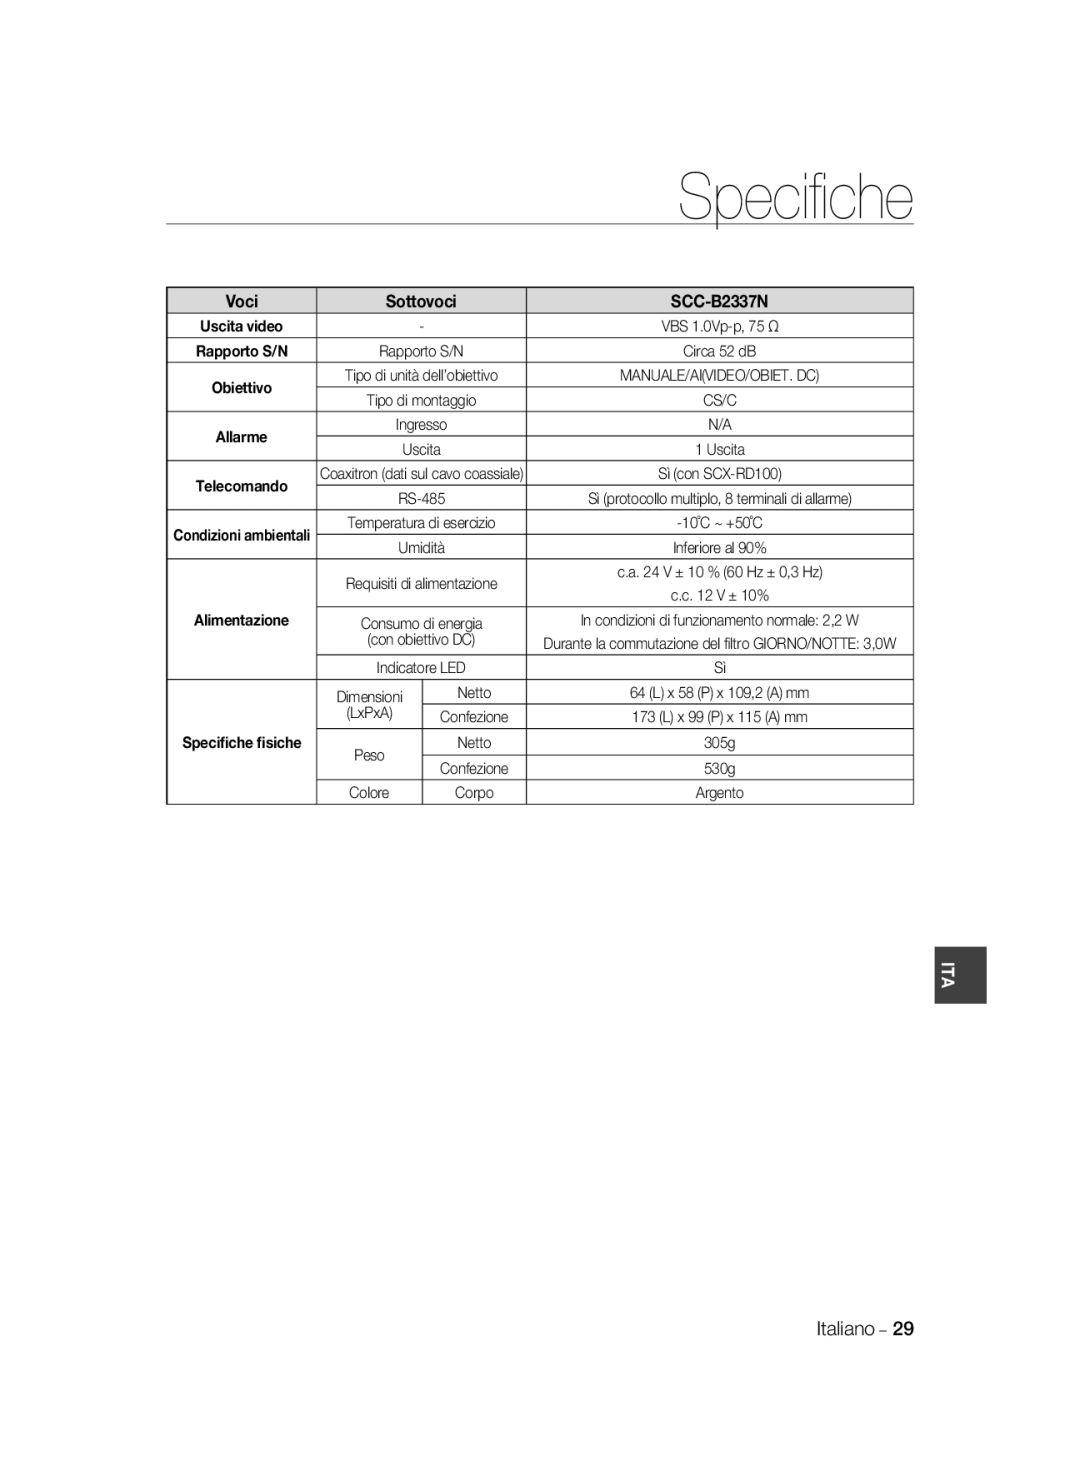 Samsung SCC-B2037P, SCC-B2337P manual Sottovoci, SCC-B2337N, Alimentazione, Speciﬁche ﬁsiche 